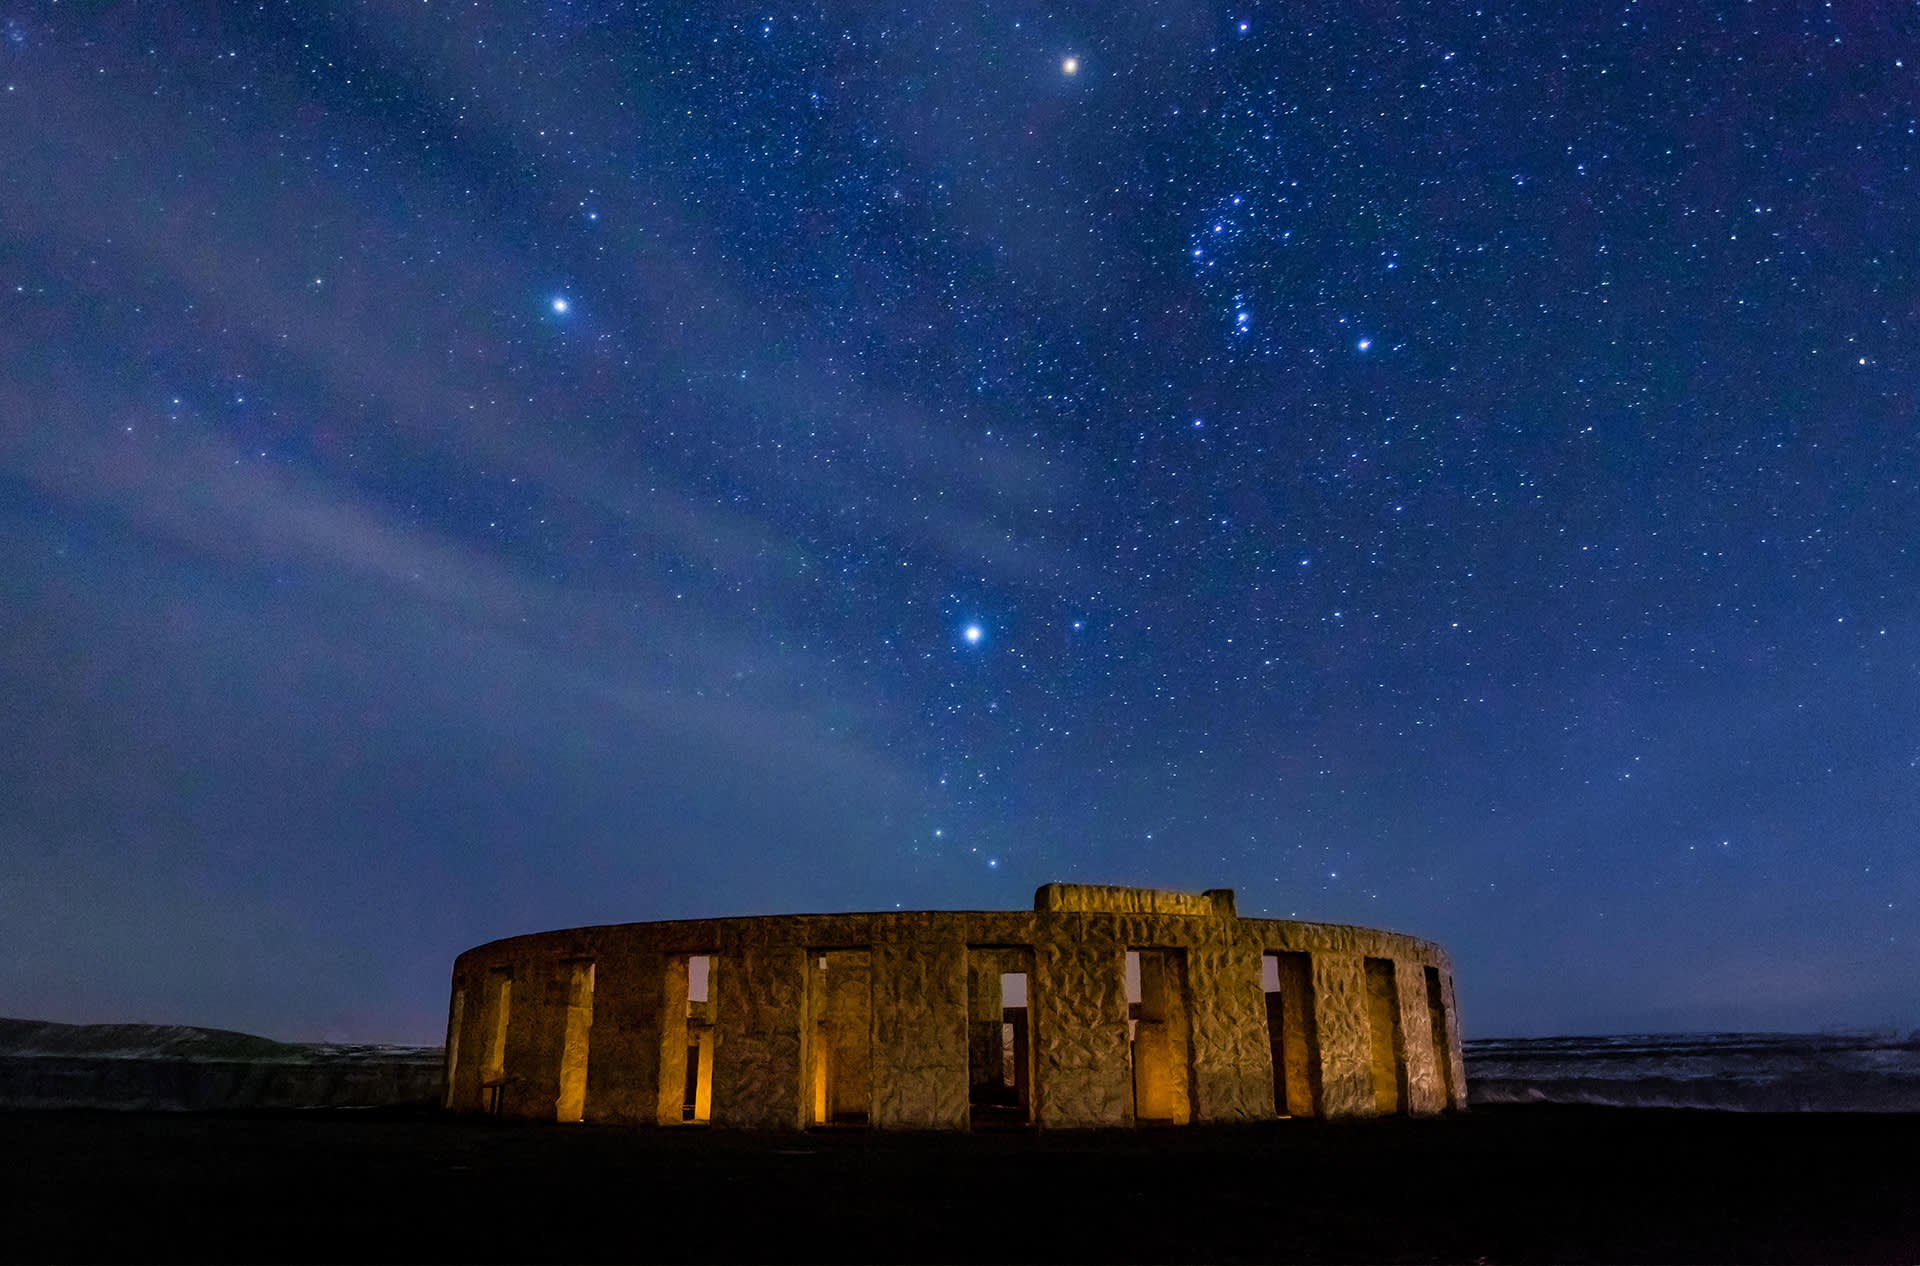 Maryhillissa, Washingtonissa sijaitseva Stonehengen kopio ja tähtitaivas jossa Orionin tähtikuvio.